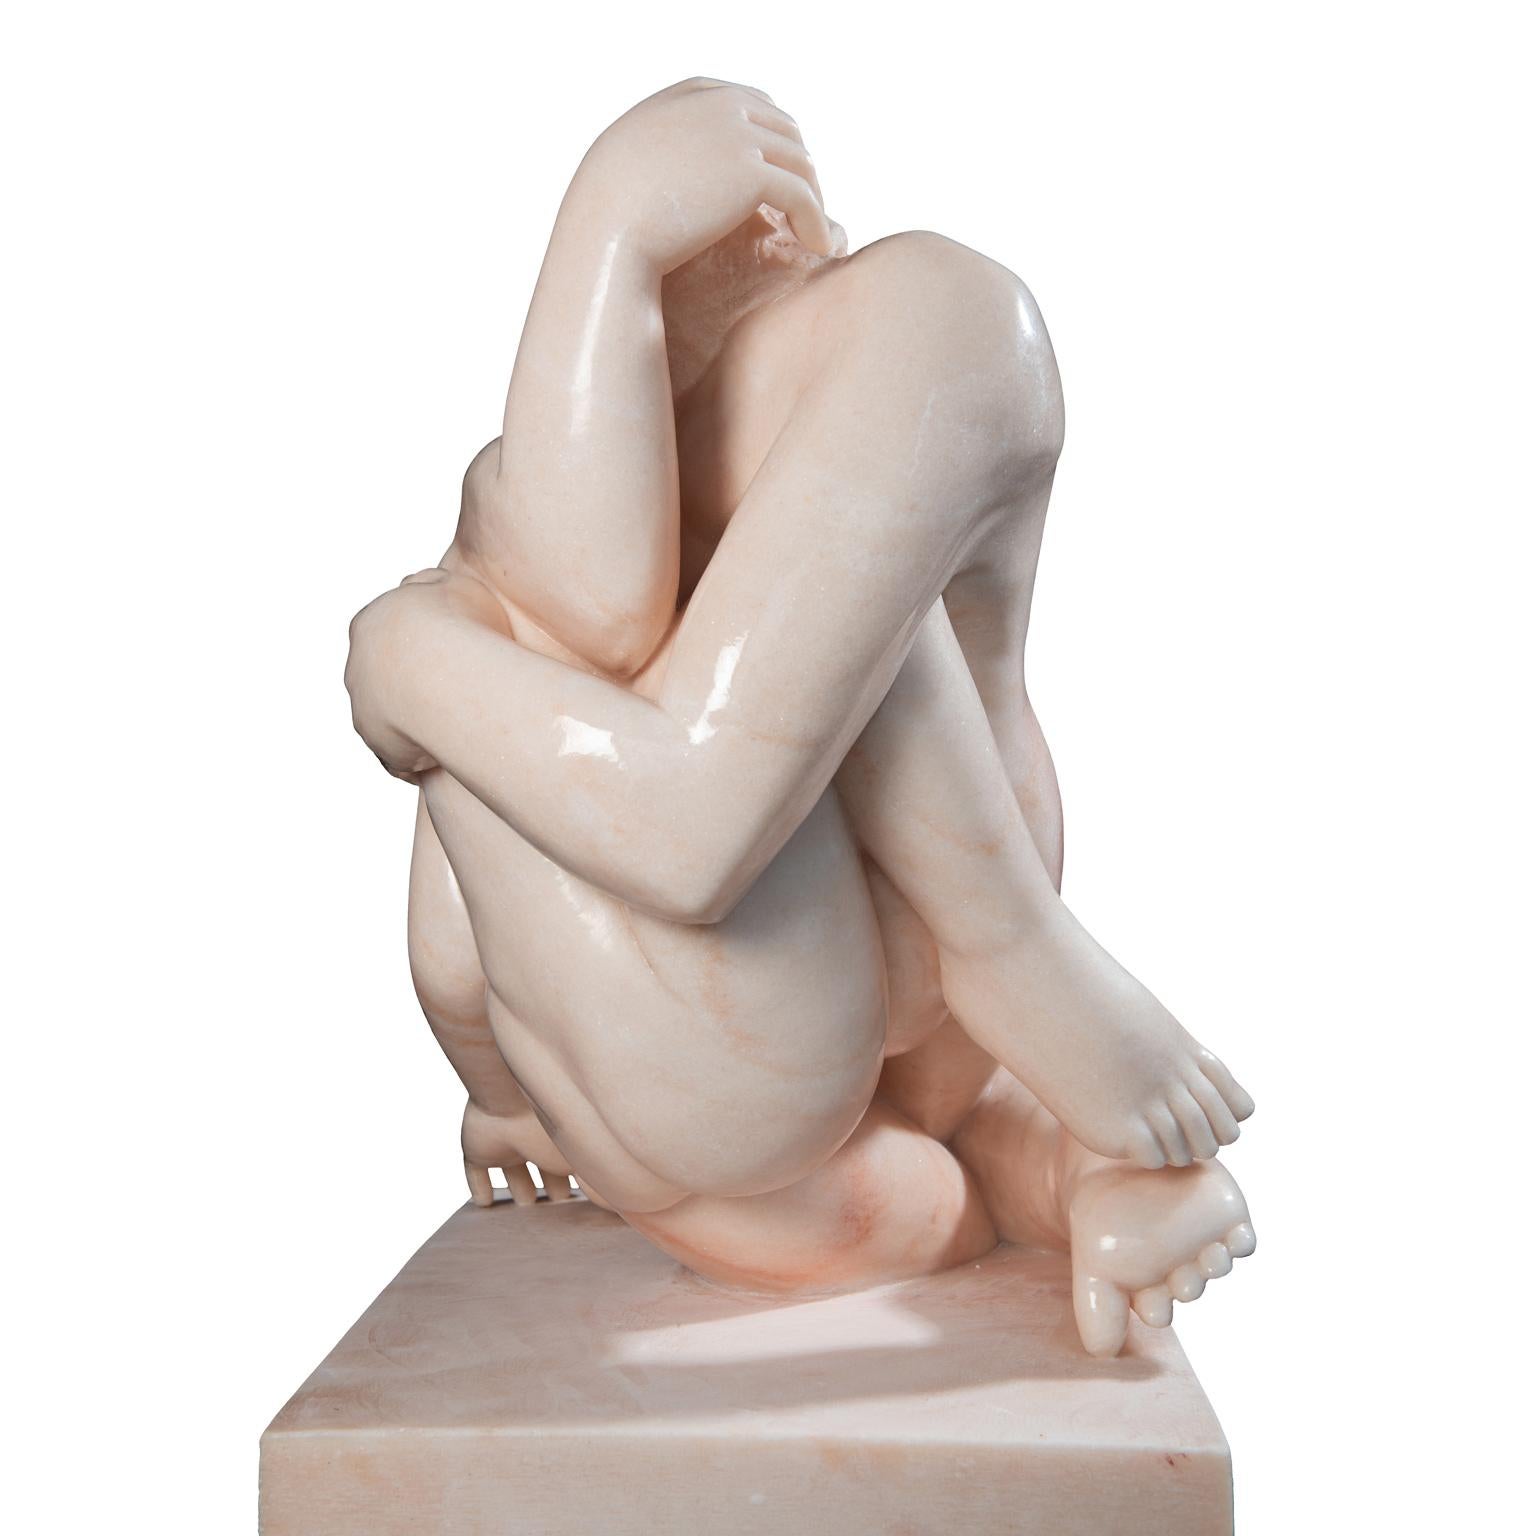 Figurative Sculpture Lorenzo Vignoli - Bacio (Kiss) - sculpture italienne contemporaine figurative en marbre rose sculptée à la main